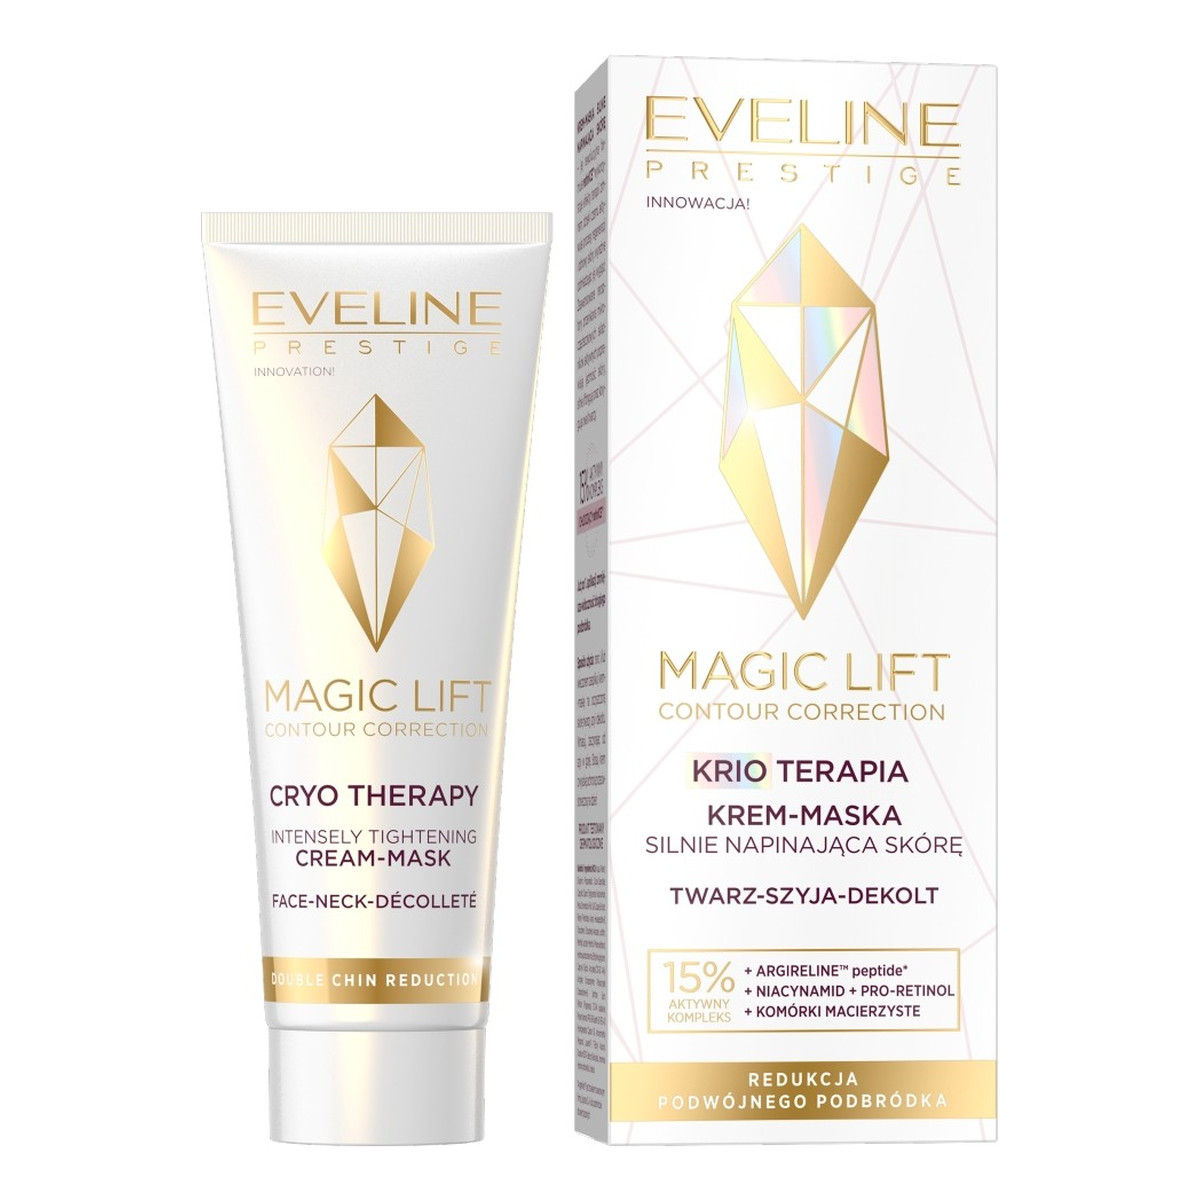 Eveline Magic Lift Contour Correction Krio Terapia Krem-maska silnie napinająca skórę (twarz,szyja,dekolt) 50ml